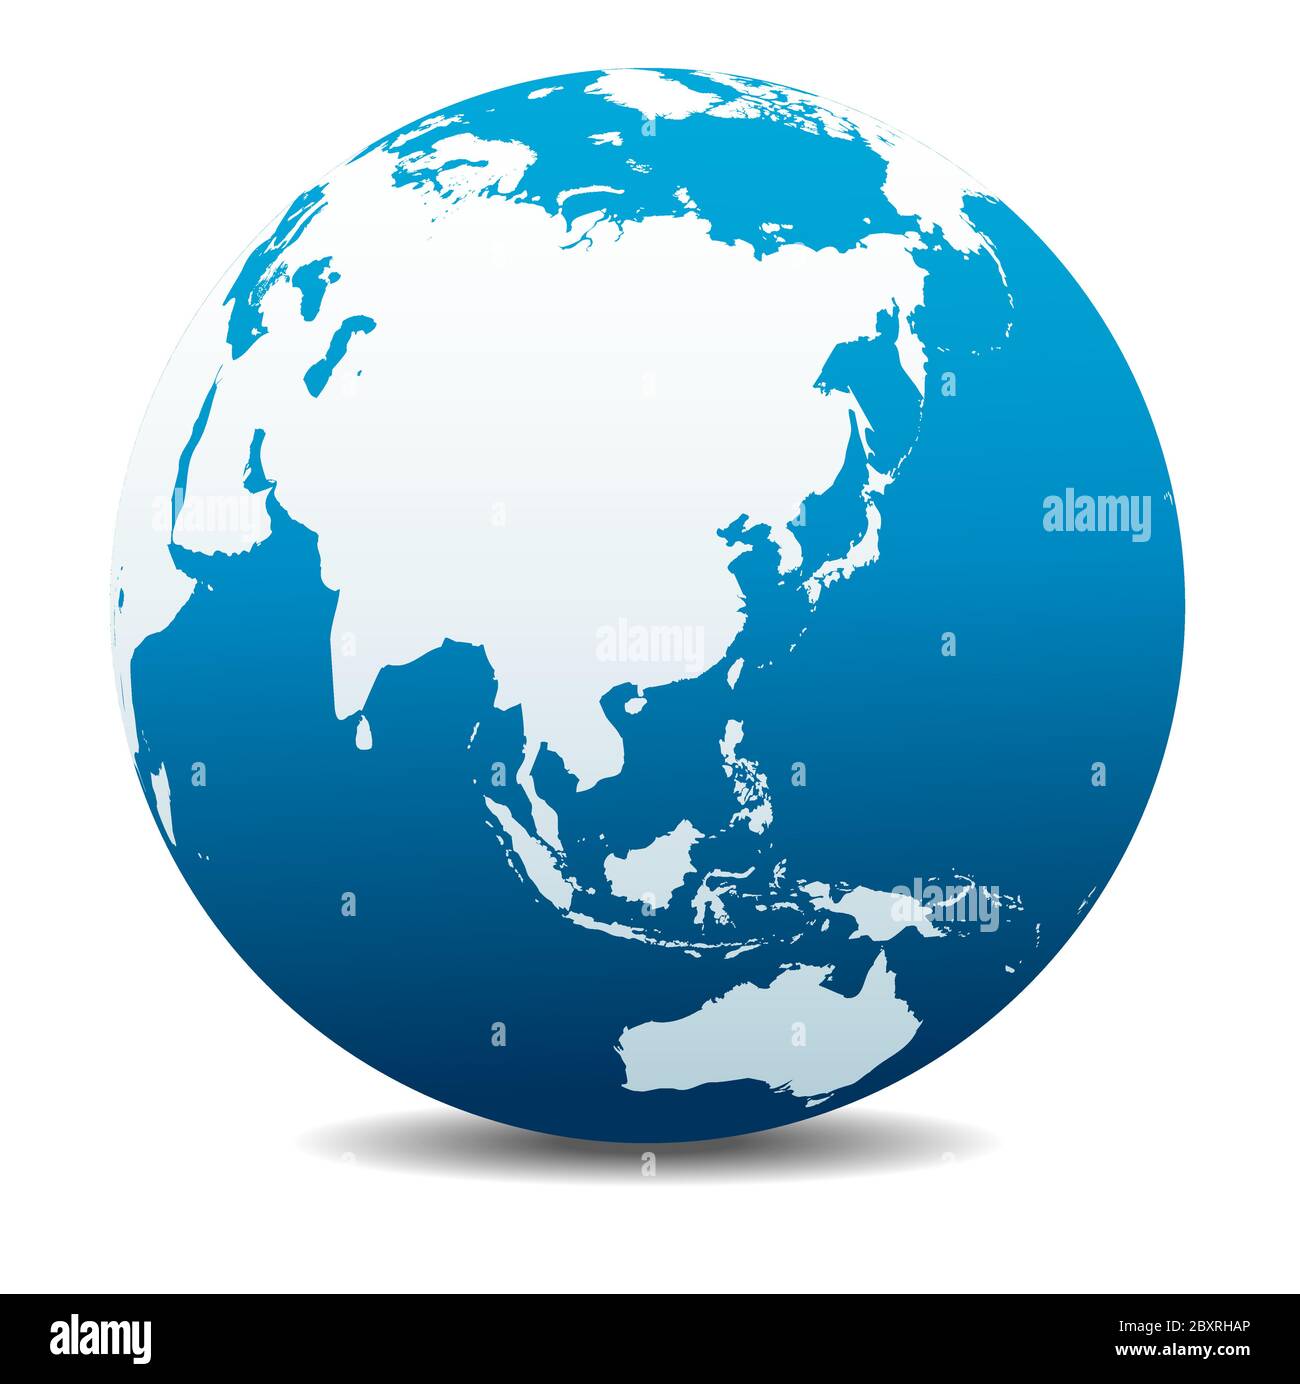 Chine, Japon, Malaisie, Thaïlande, Indonésie. Icône carte vectorielle du globe terrestre, Terre. Tous les éléments se trouvent sur des calques individuels dans le fichier vectoriel. Illustration de Vecteur